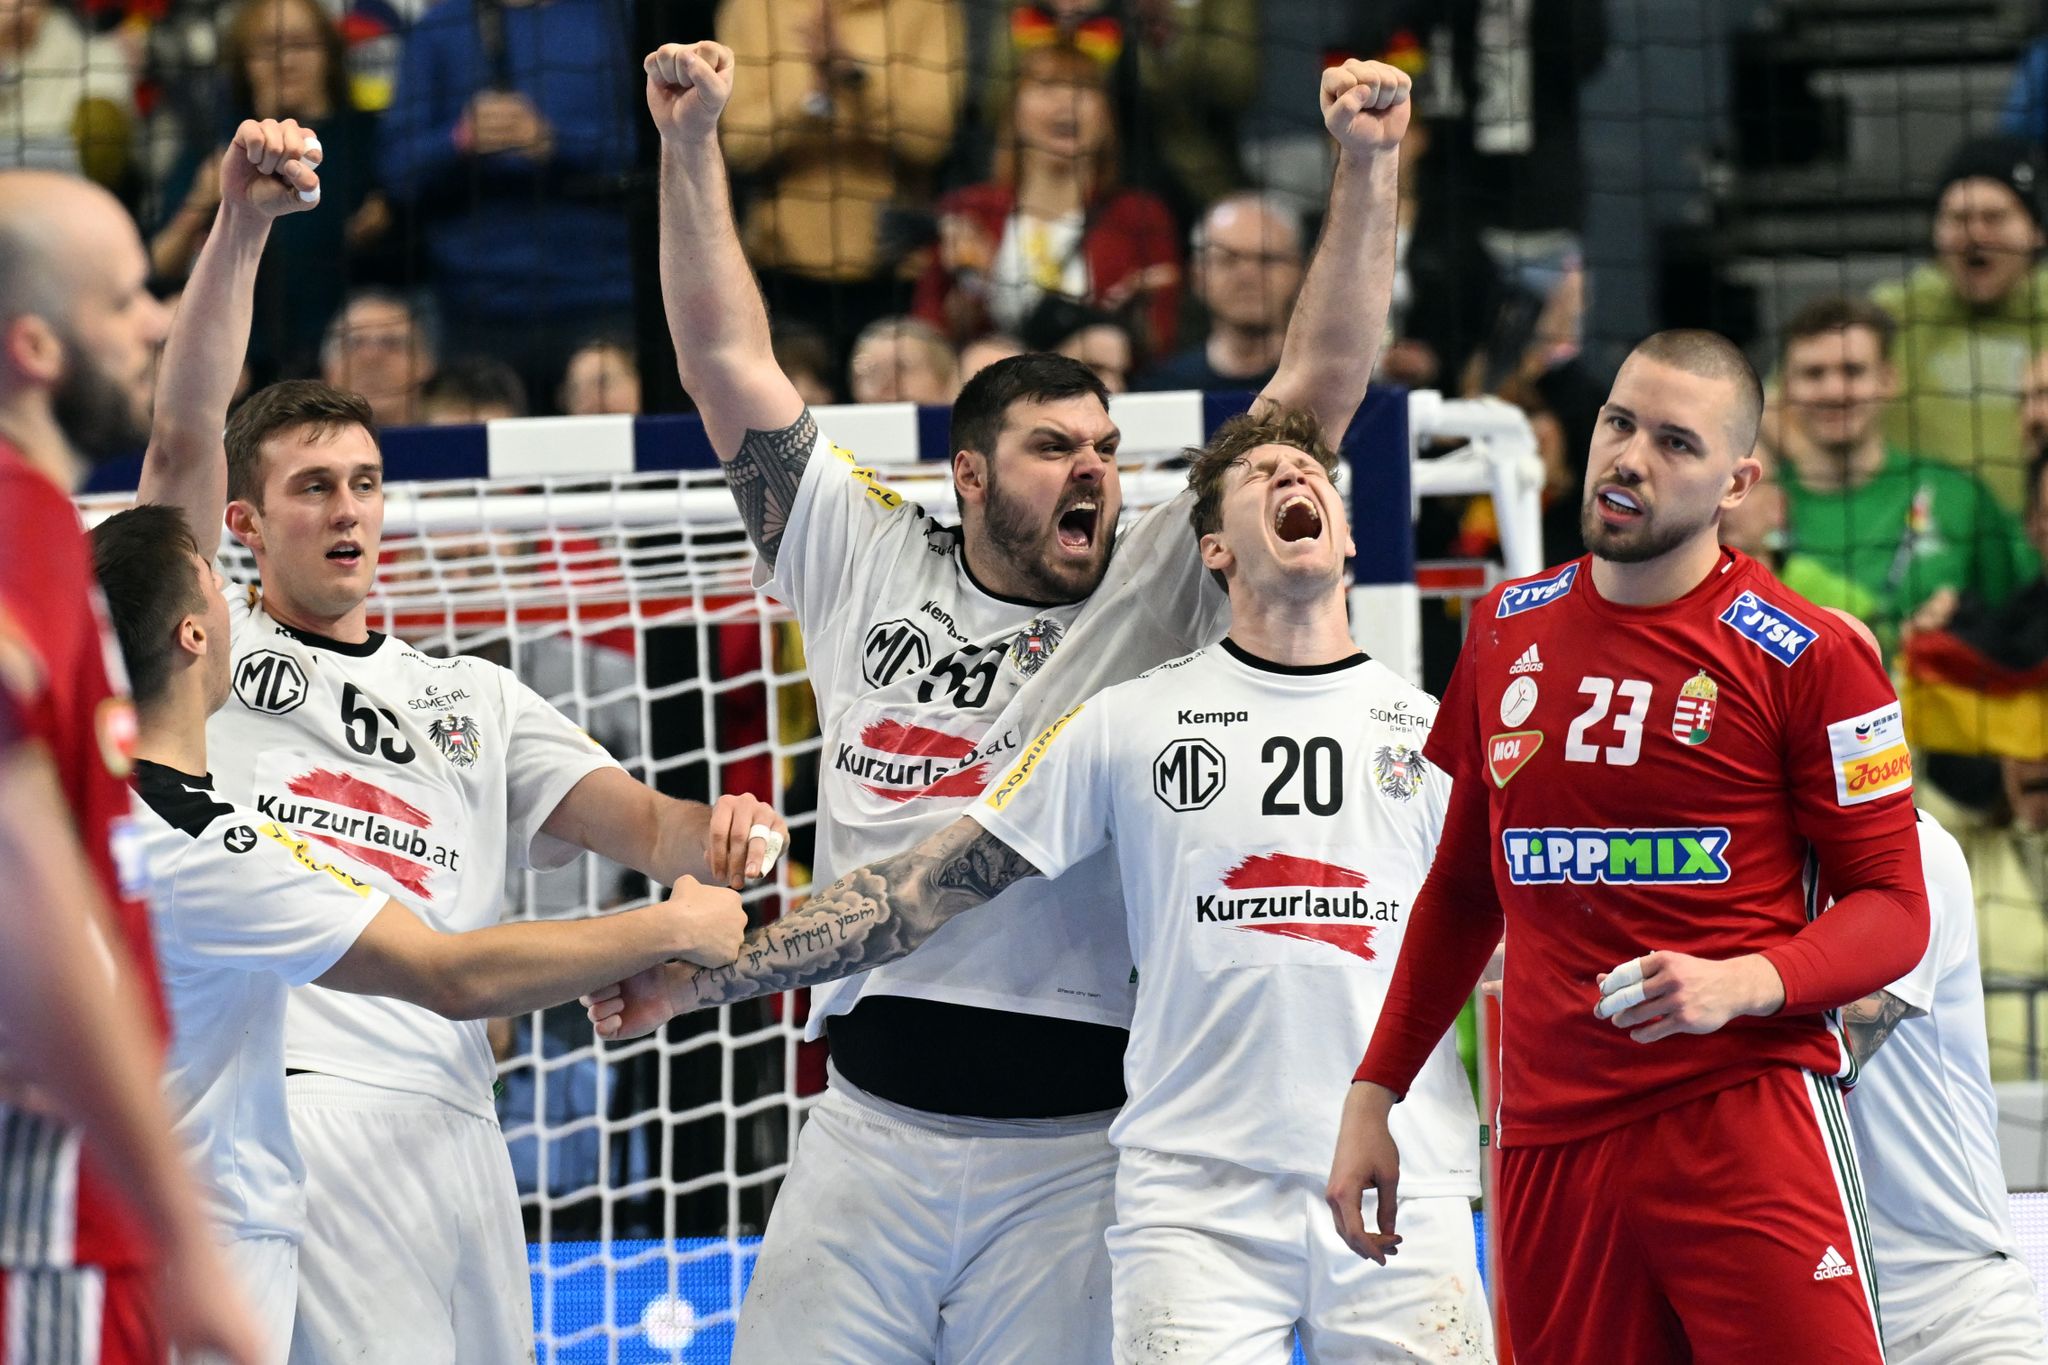 österreich erlebt handball-boom: «sind auf jeder titelseite»